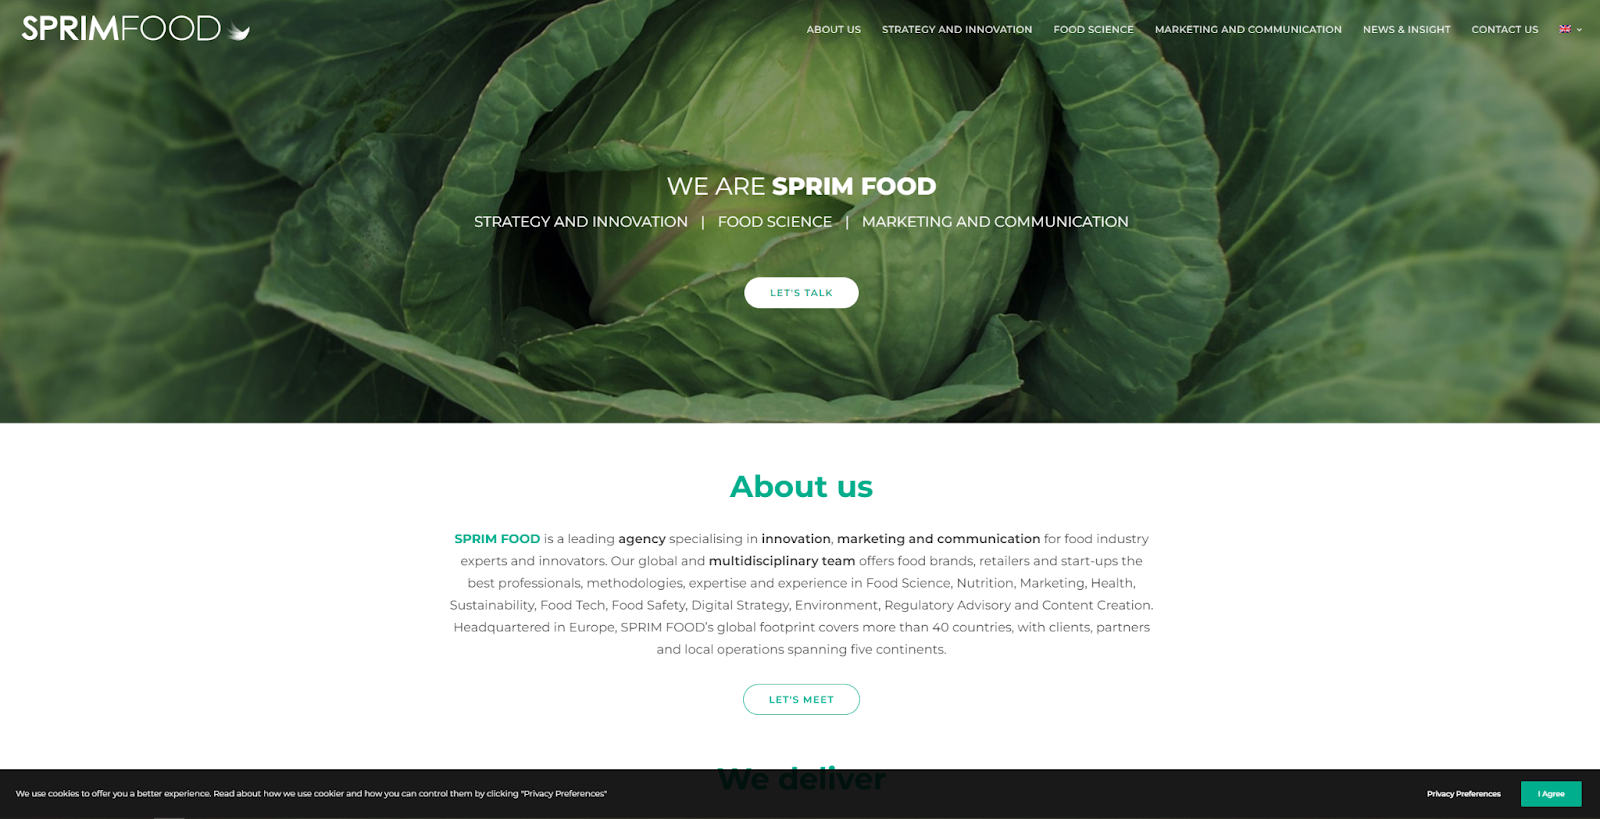 Food marketing agency - SPRIM FOOD